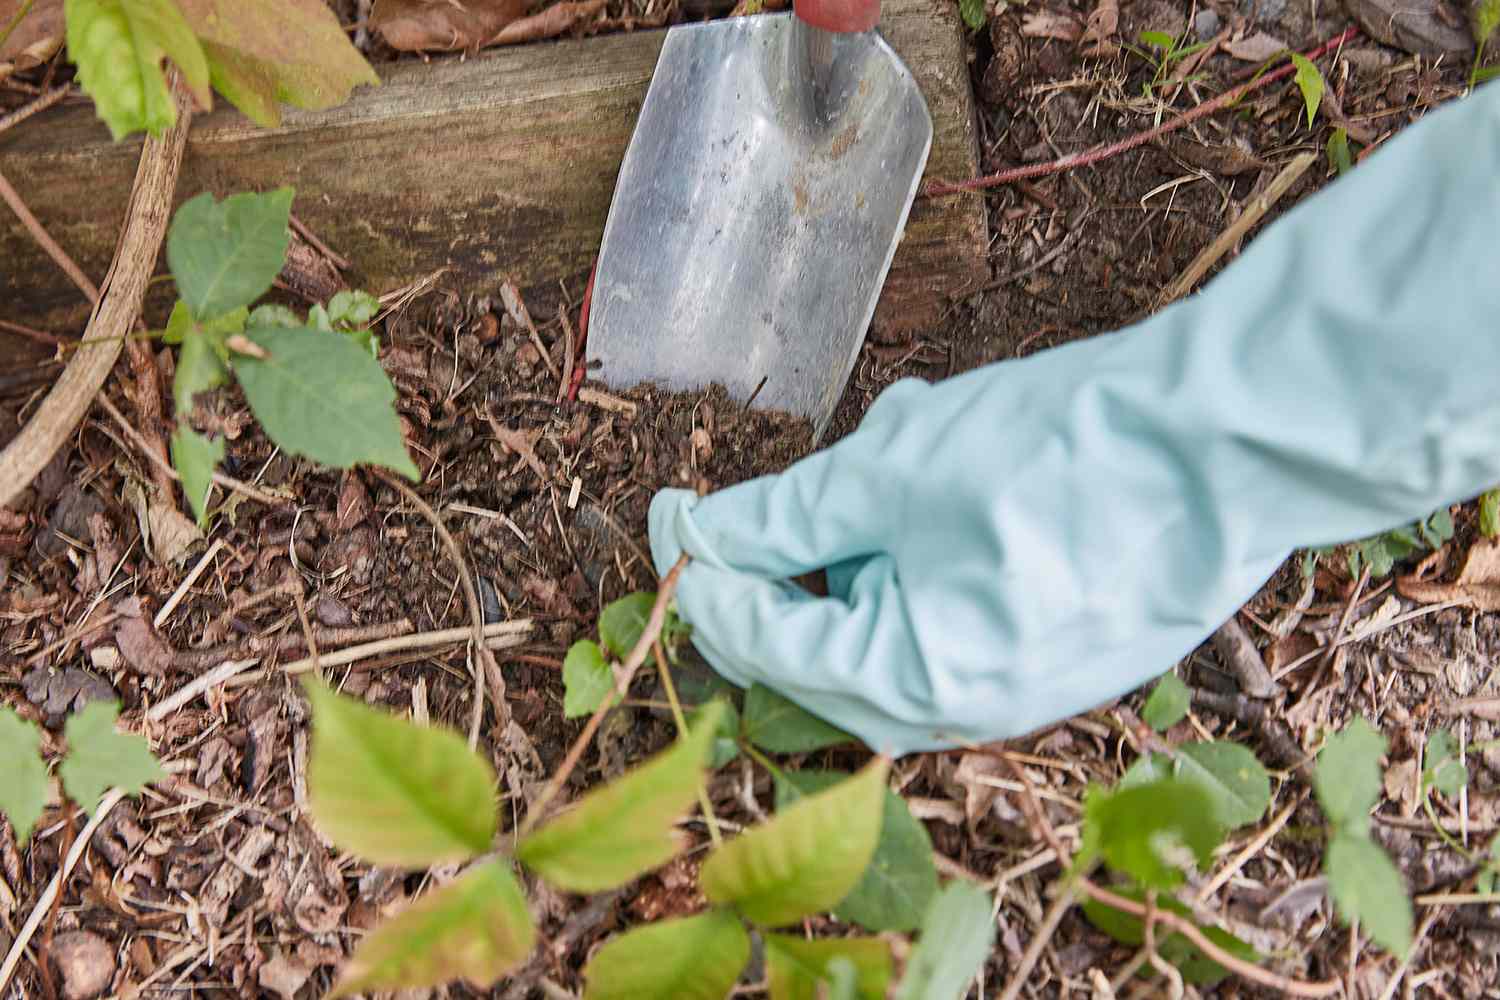 Handschaufel gräbt Wurzeln von Giftefeu-Pflanzen aus